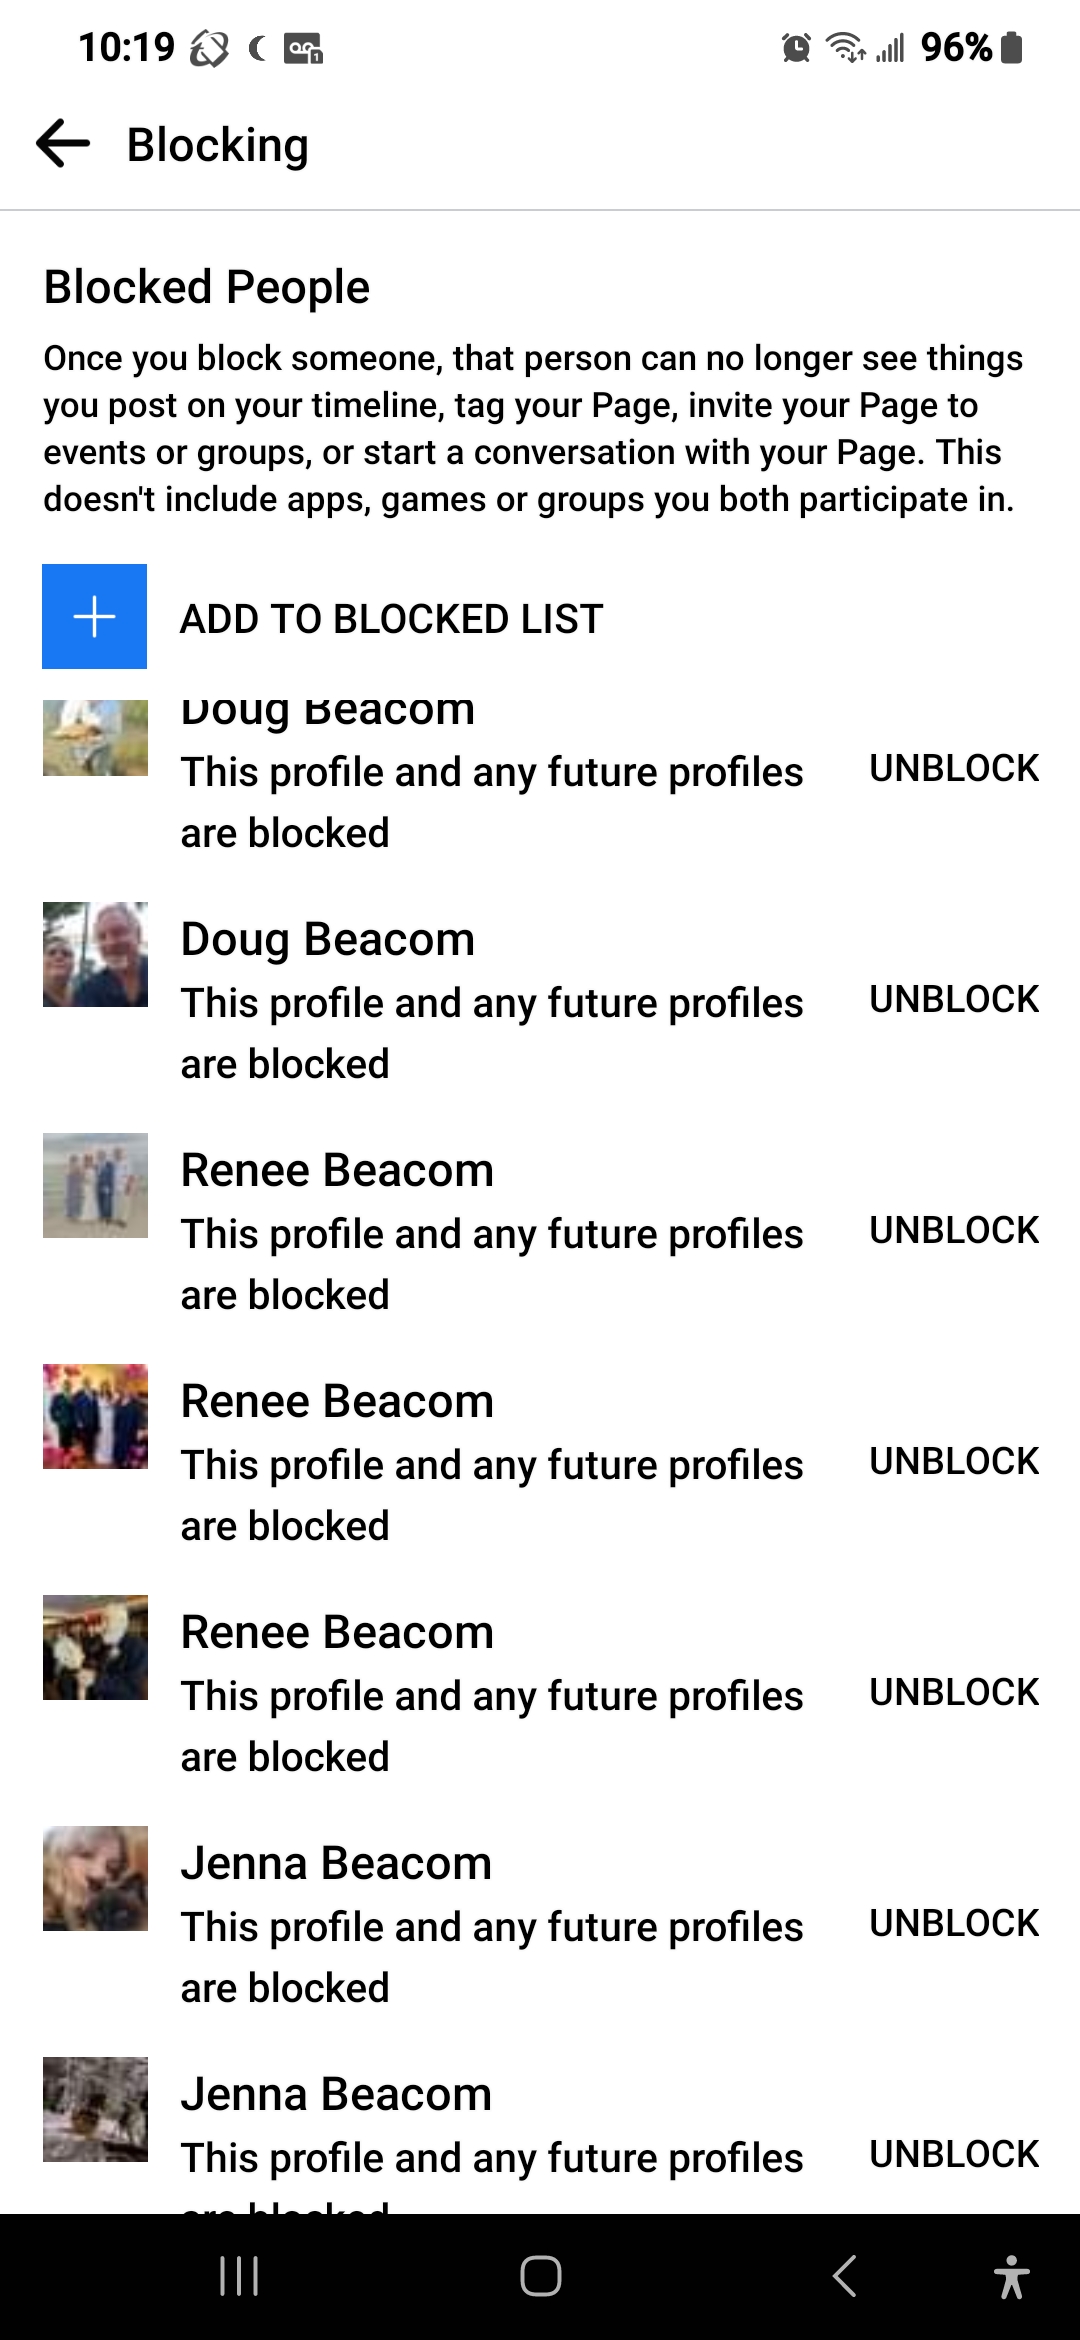 Blocking